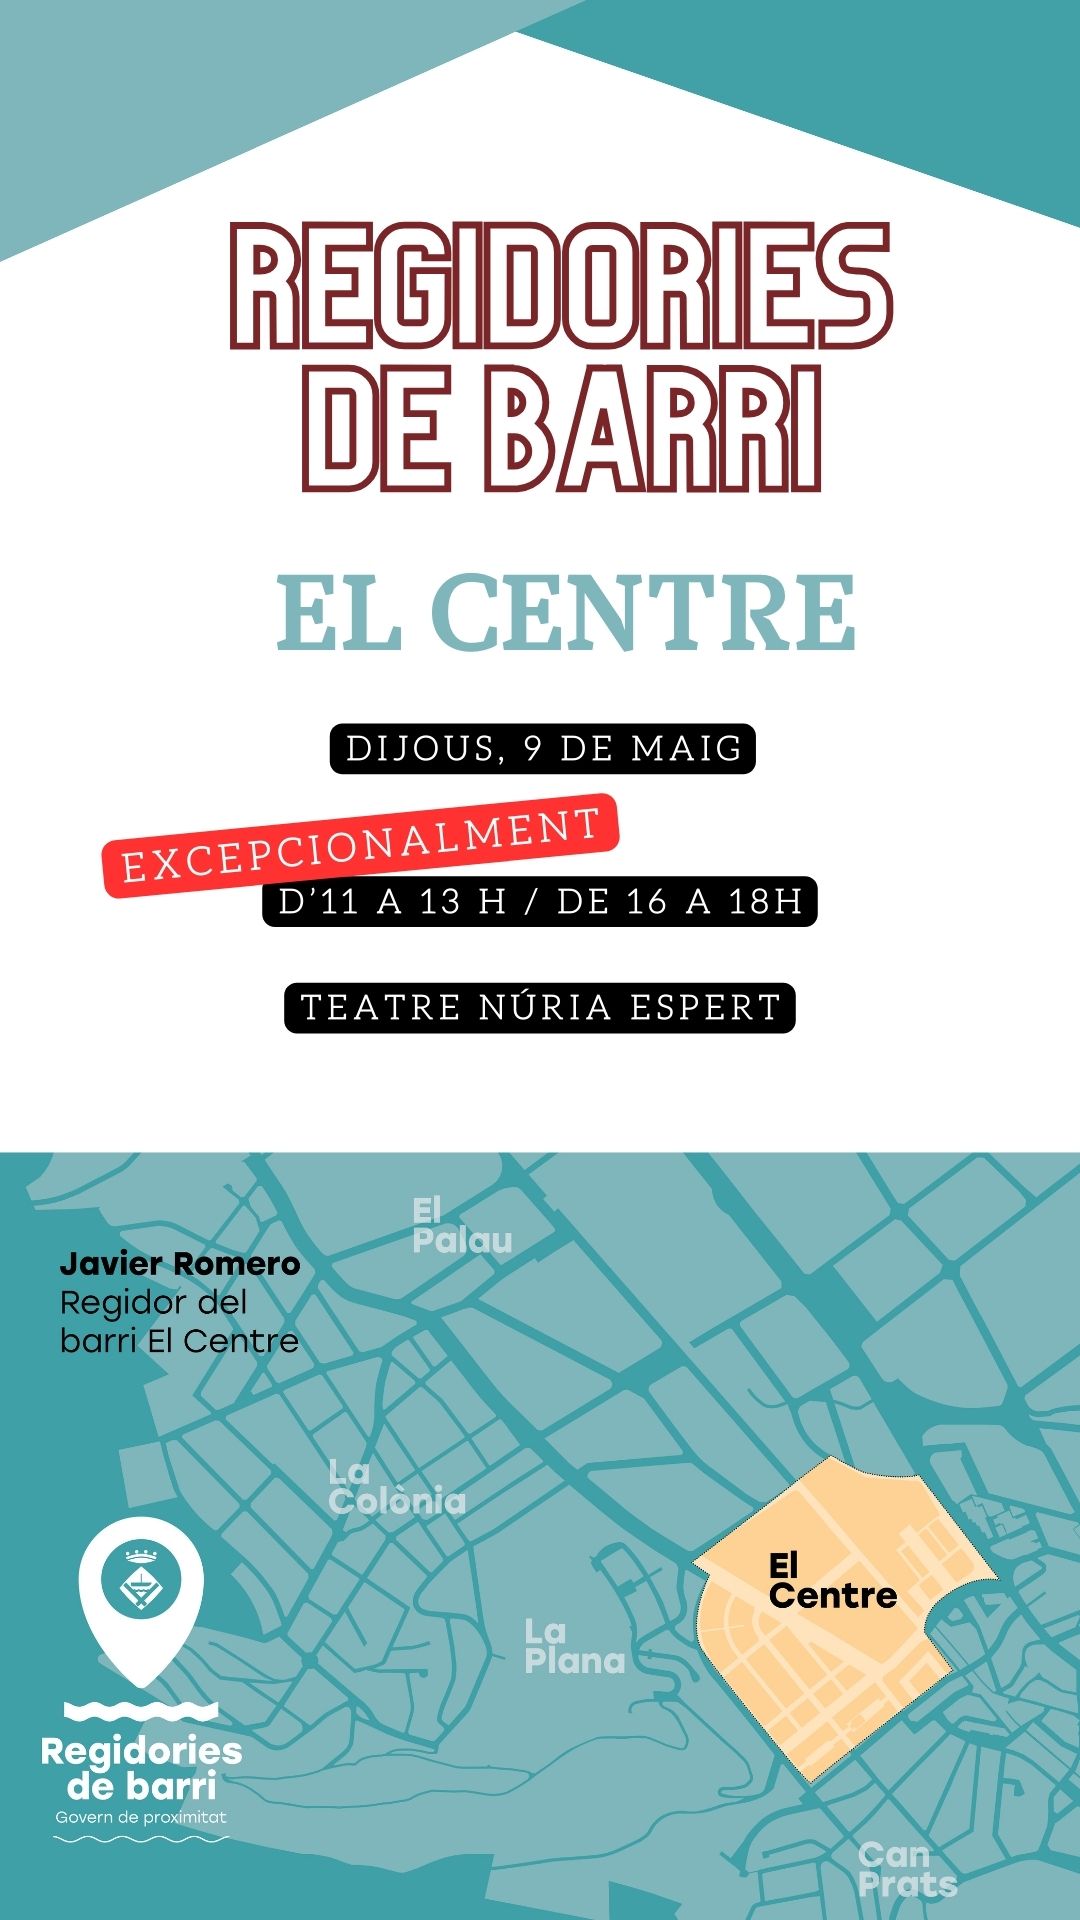 REGIDORIES DE BARRI: El Centre